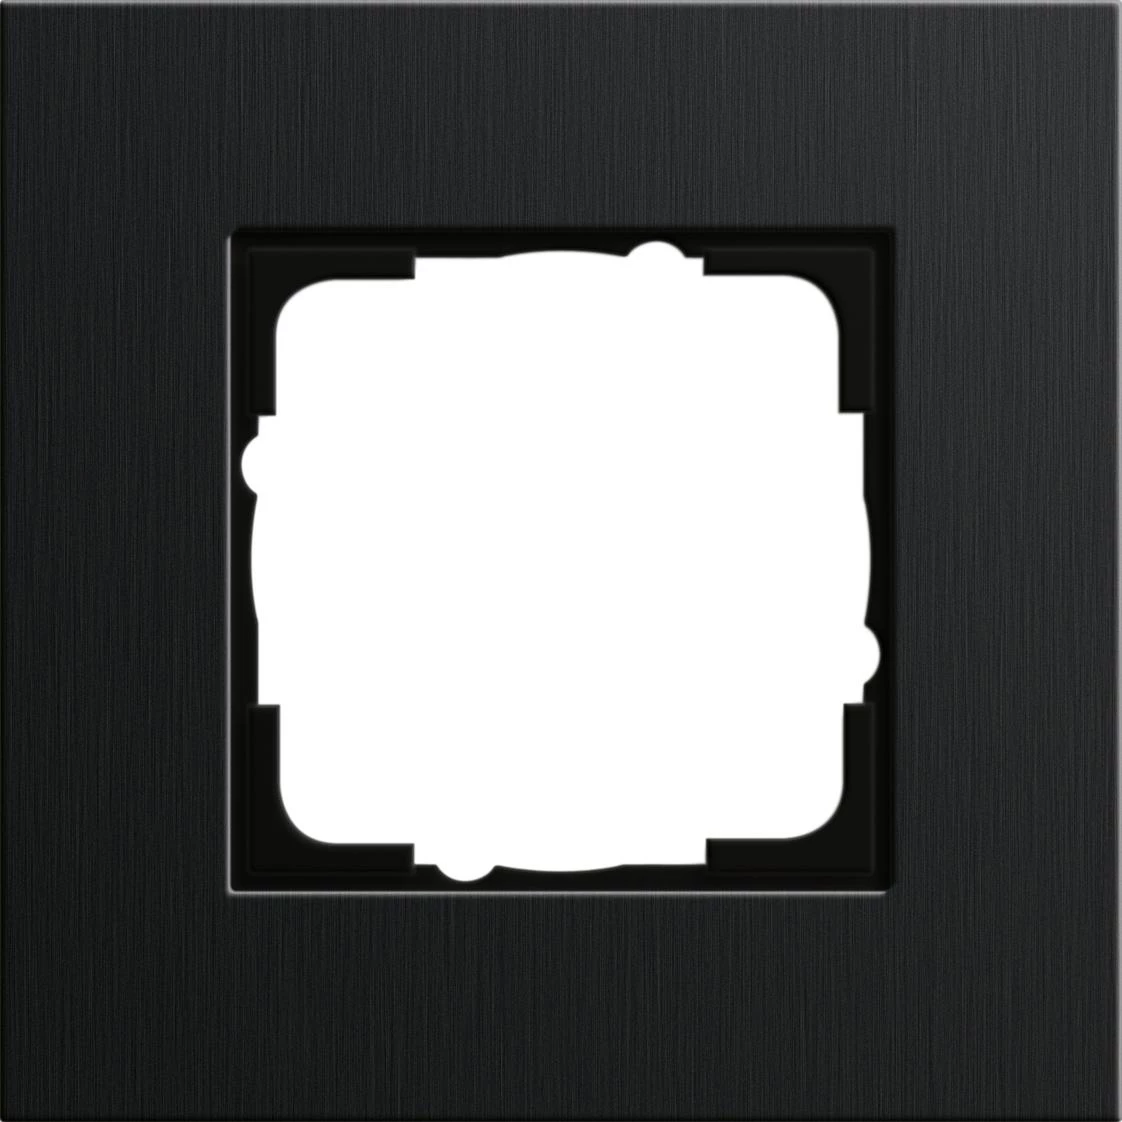  артикул 0211126 название Рамка одинарная, Алюминий Черный (анодированный), серия Esprit